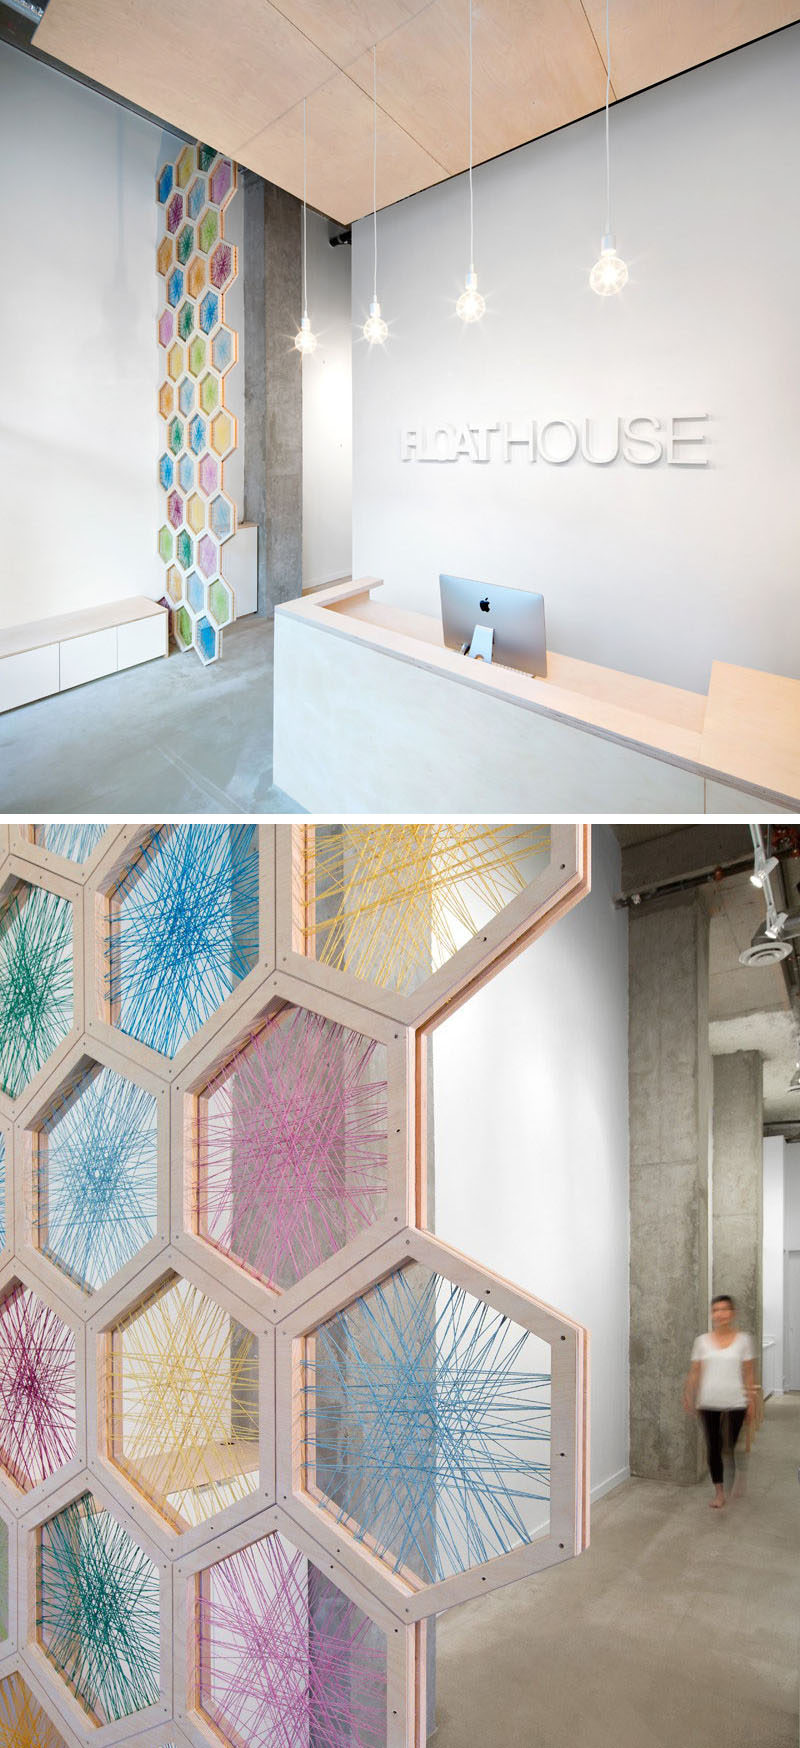 19 идей использования шестиугольников в дизайне интерьеров и архитектуре // Экран высотой 17 футов, сделанный из шестиугольников березы, переплетенных разноцветным шпагатом, приветствует вас, когда вы входите в FloatHouse в Ванкувере.